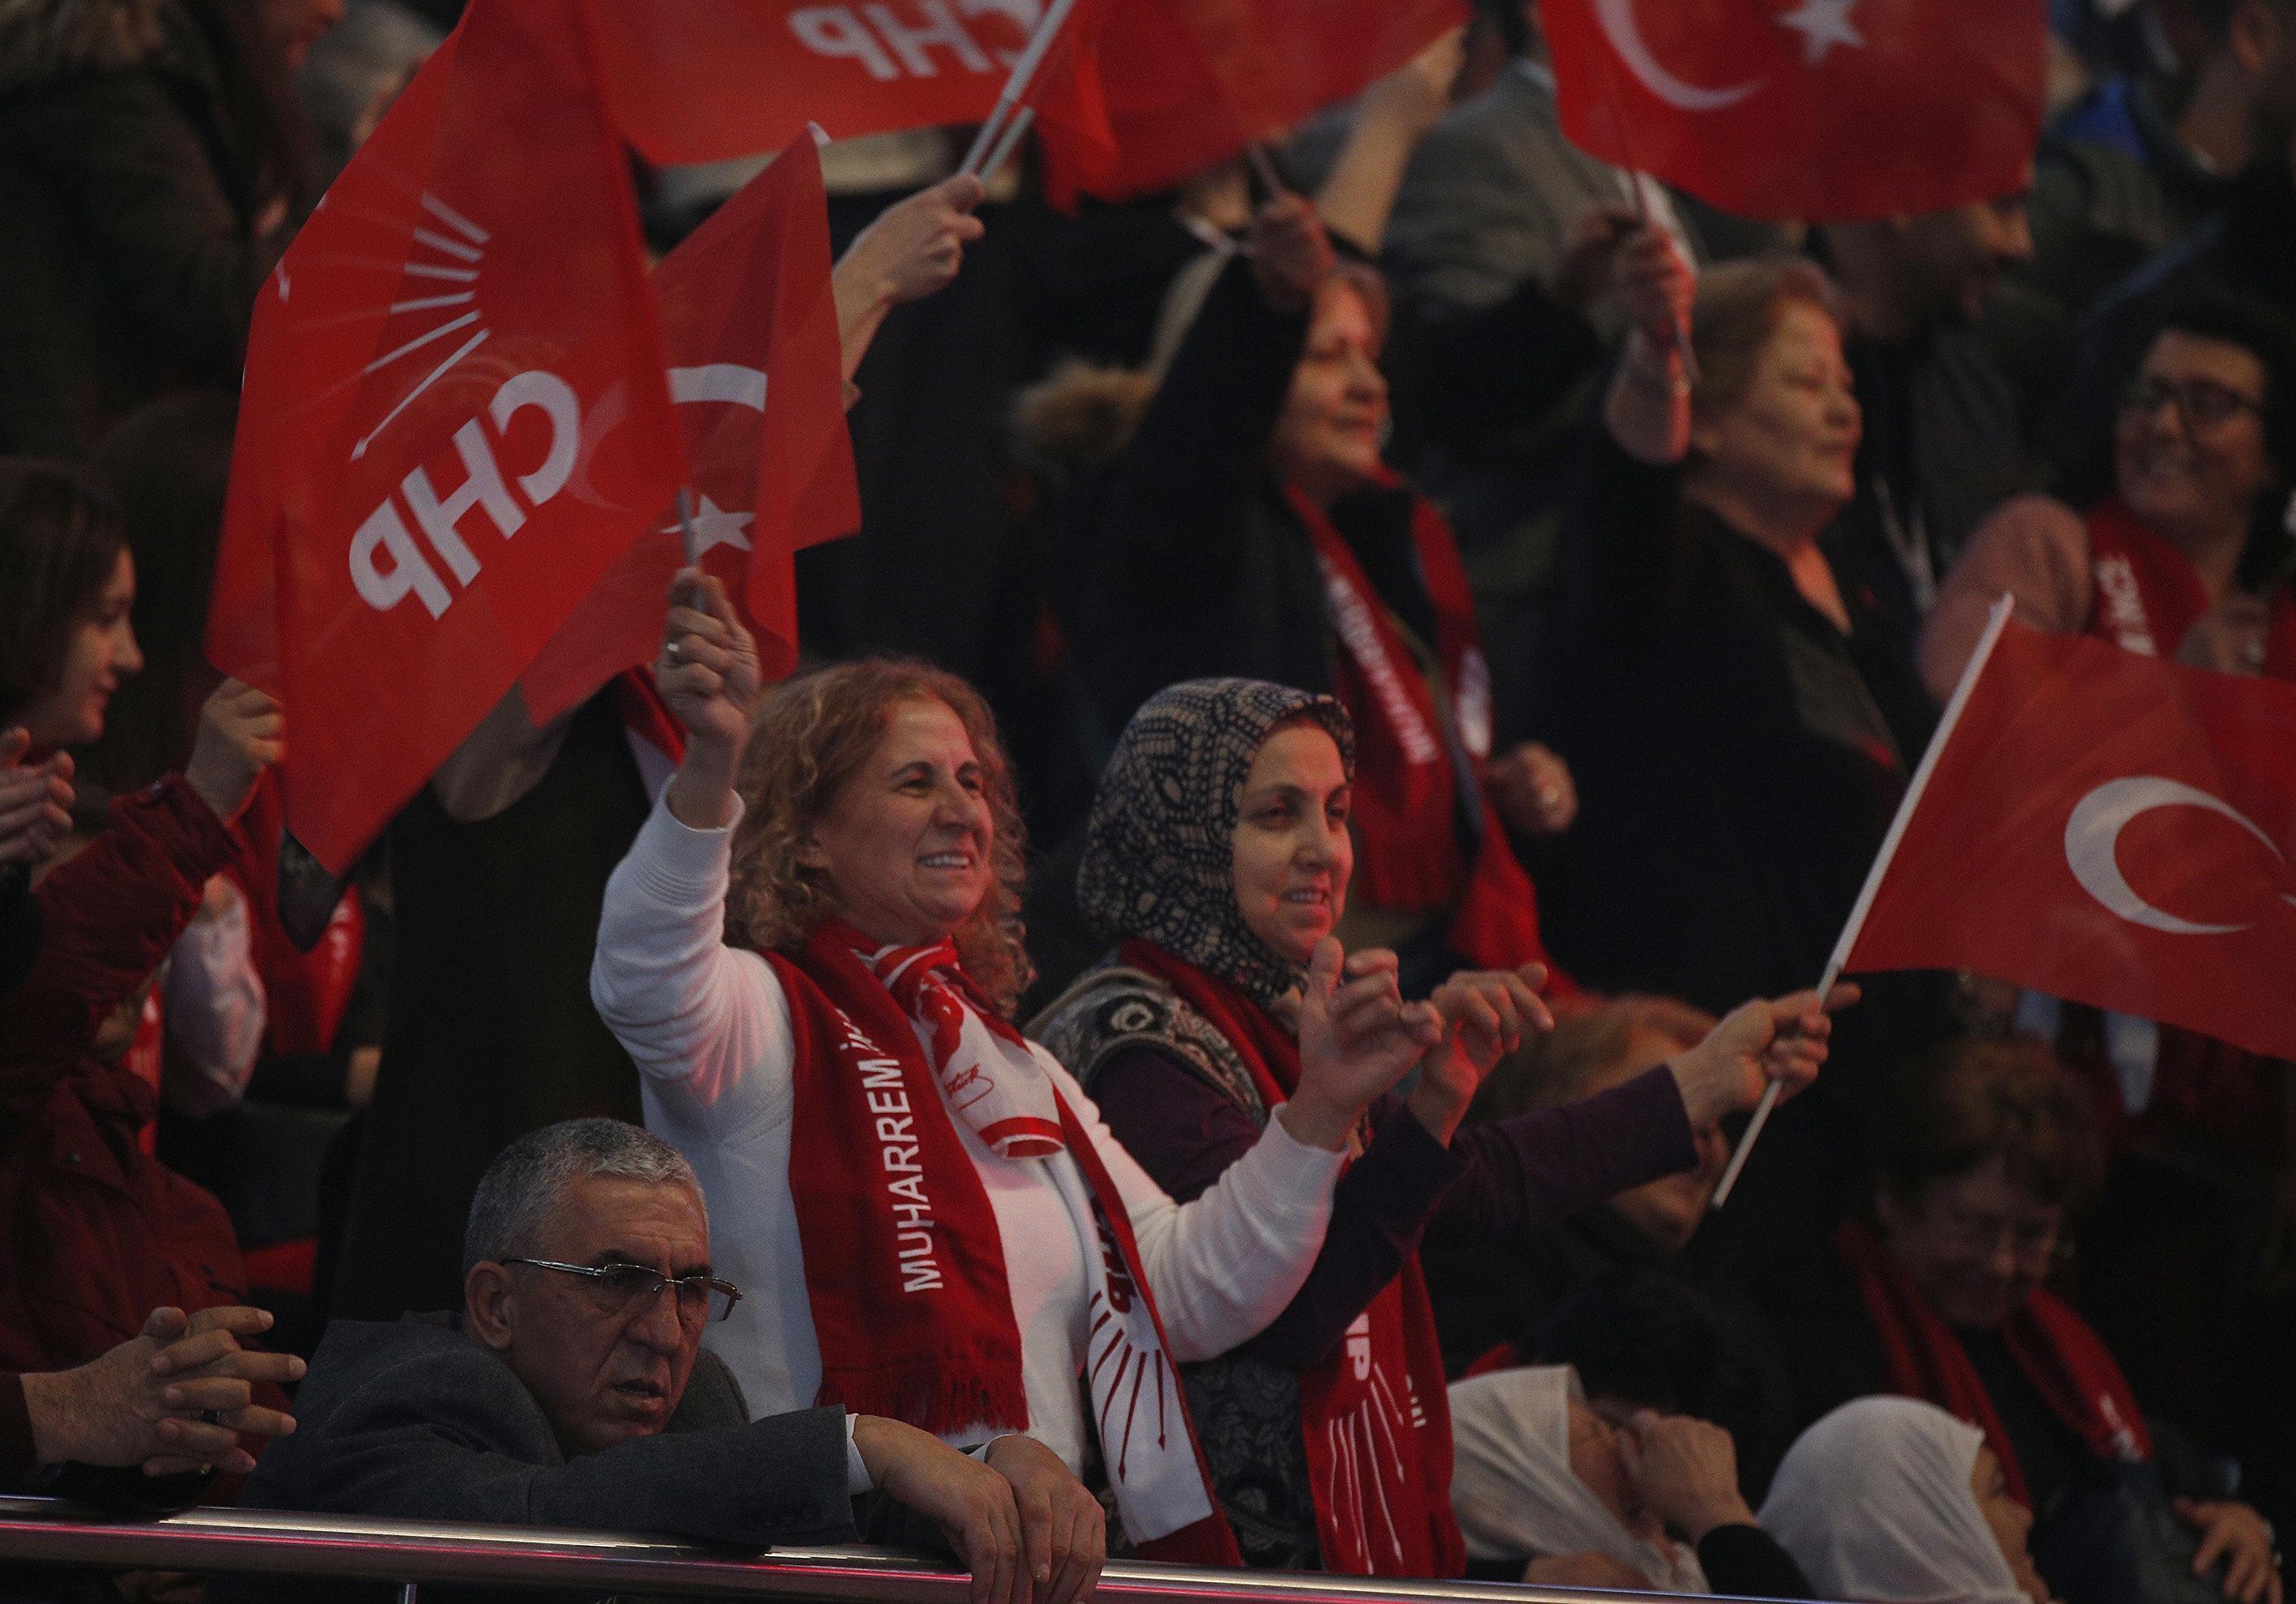 Kılıçdaroğlu yeniden genel başkan seçildi